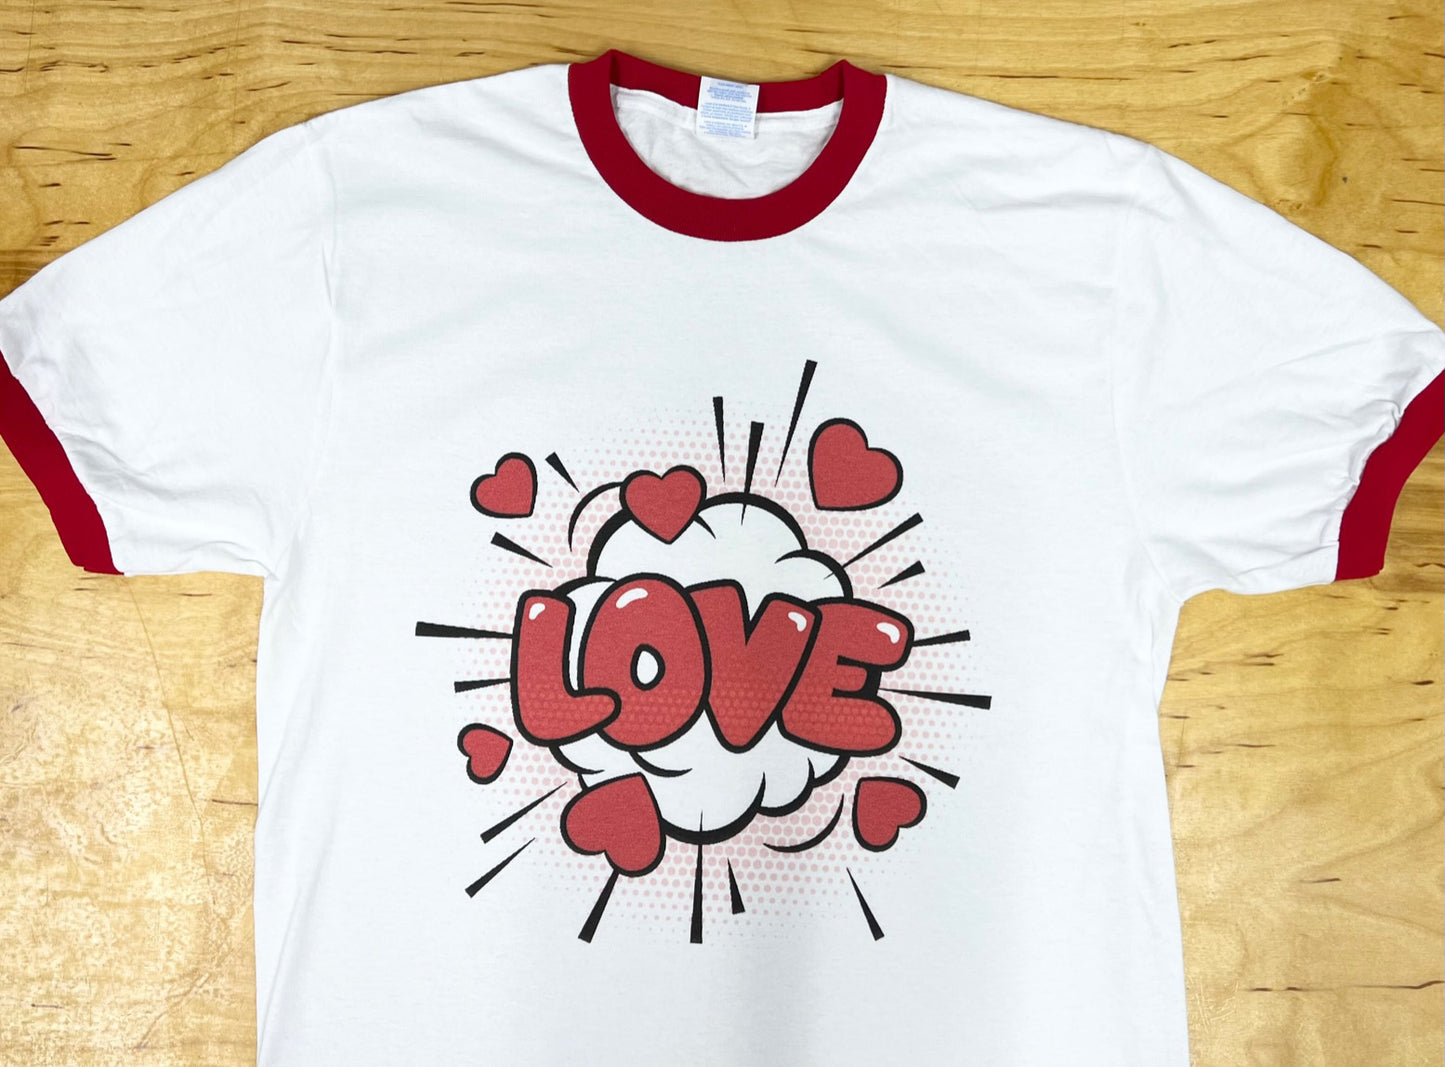 LOVE Pop Art Red and White Ringer T-Shirt